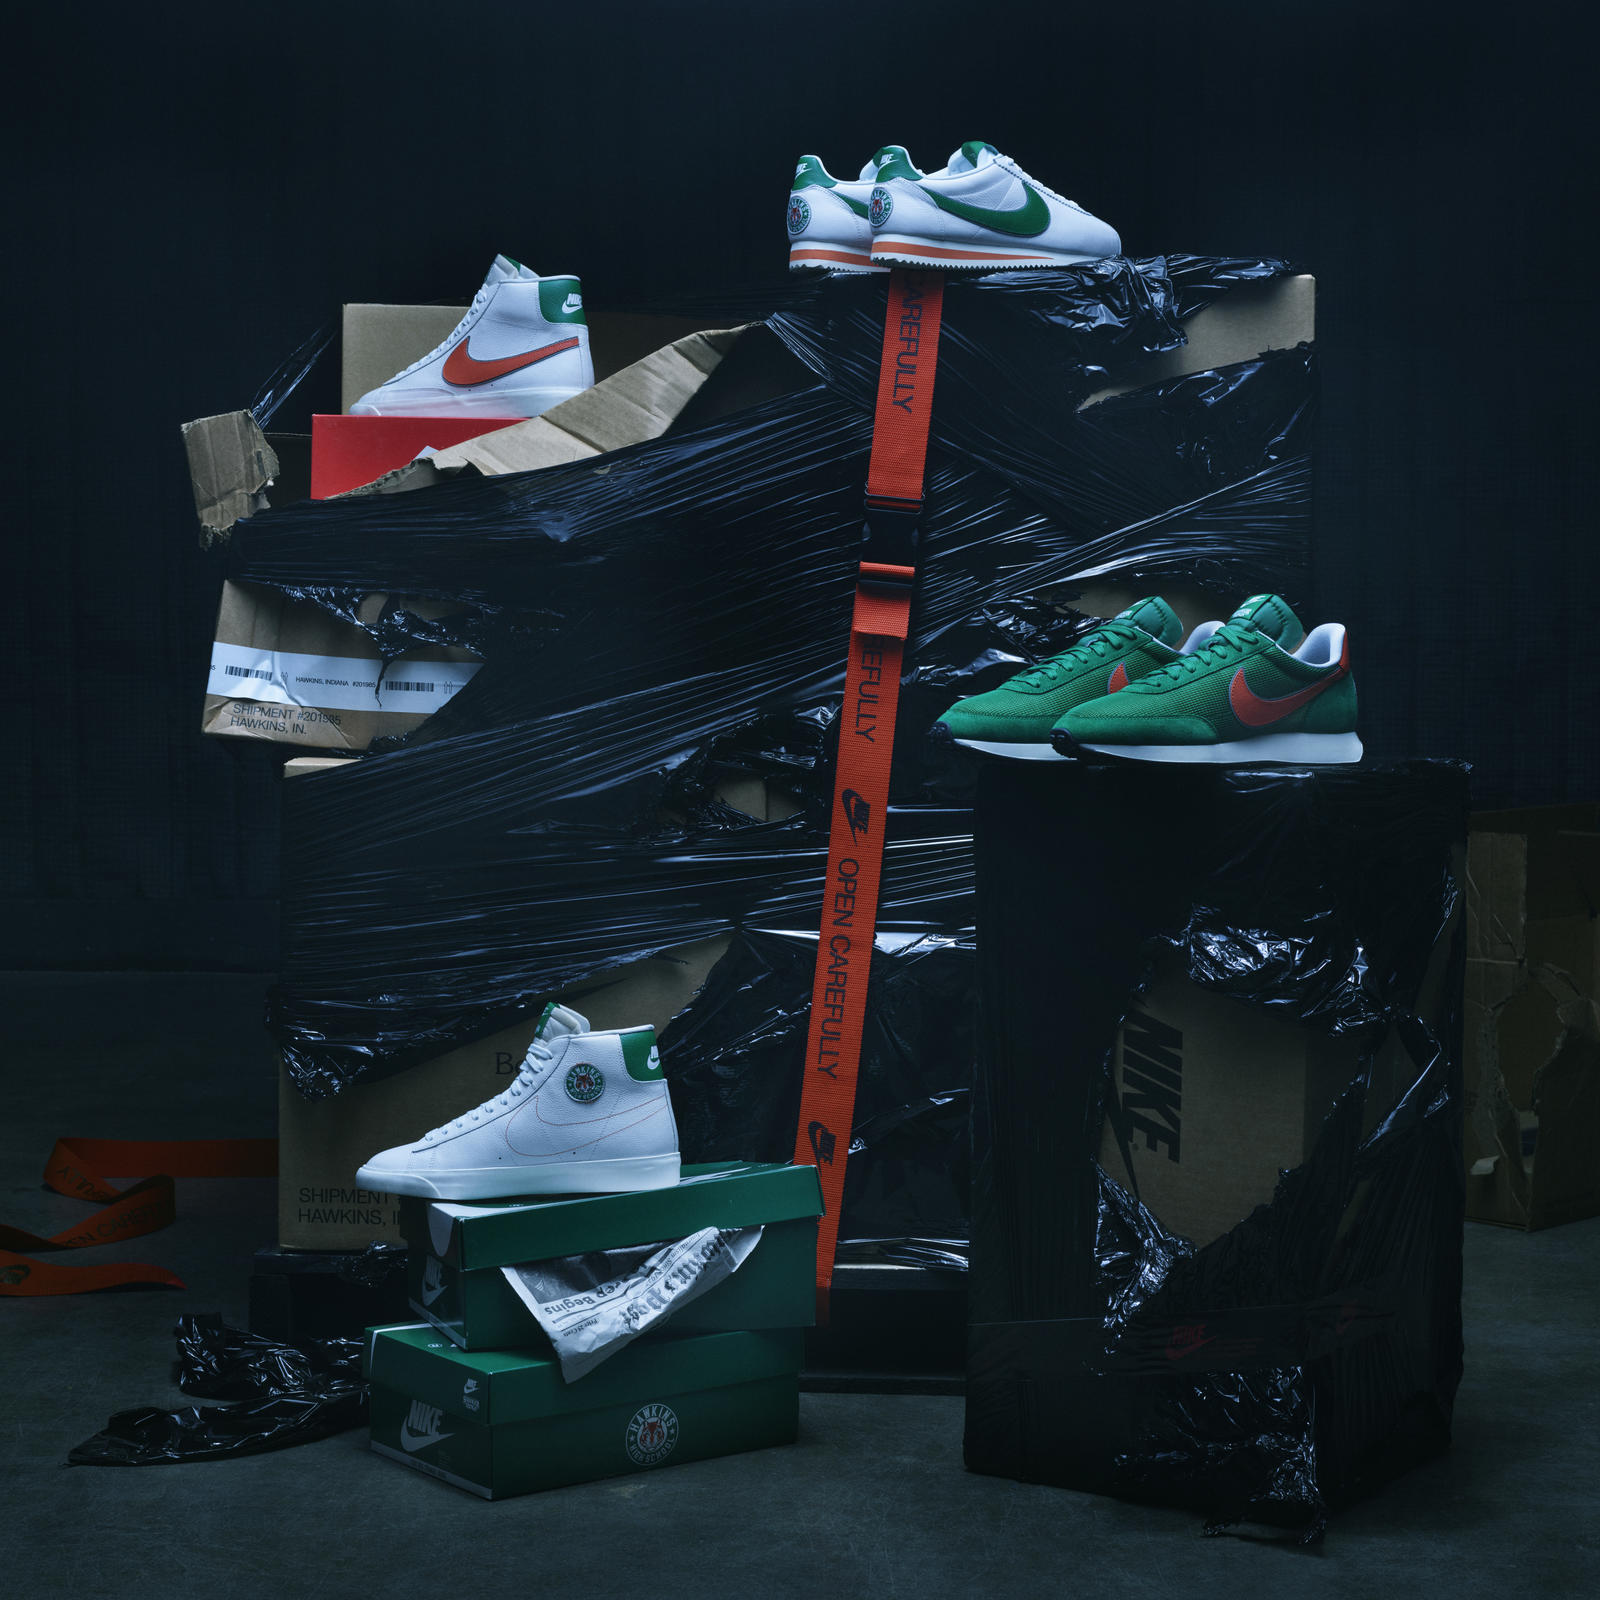 ¡Toma todo mi dinero! Mira la nueva colección de Nike inspirada en Stranger Things